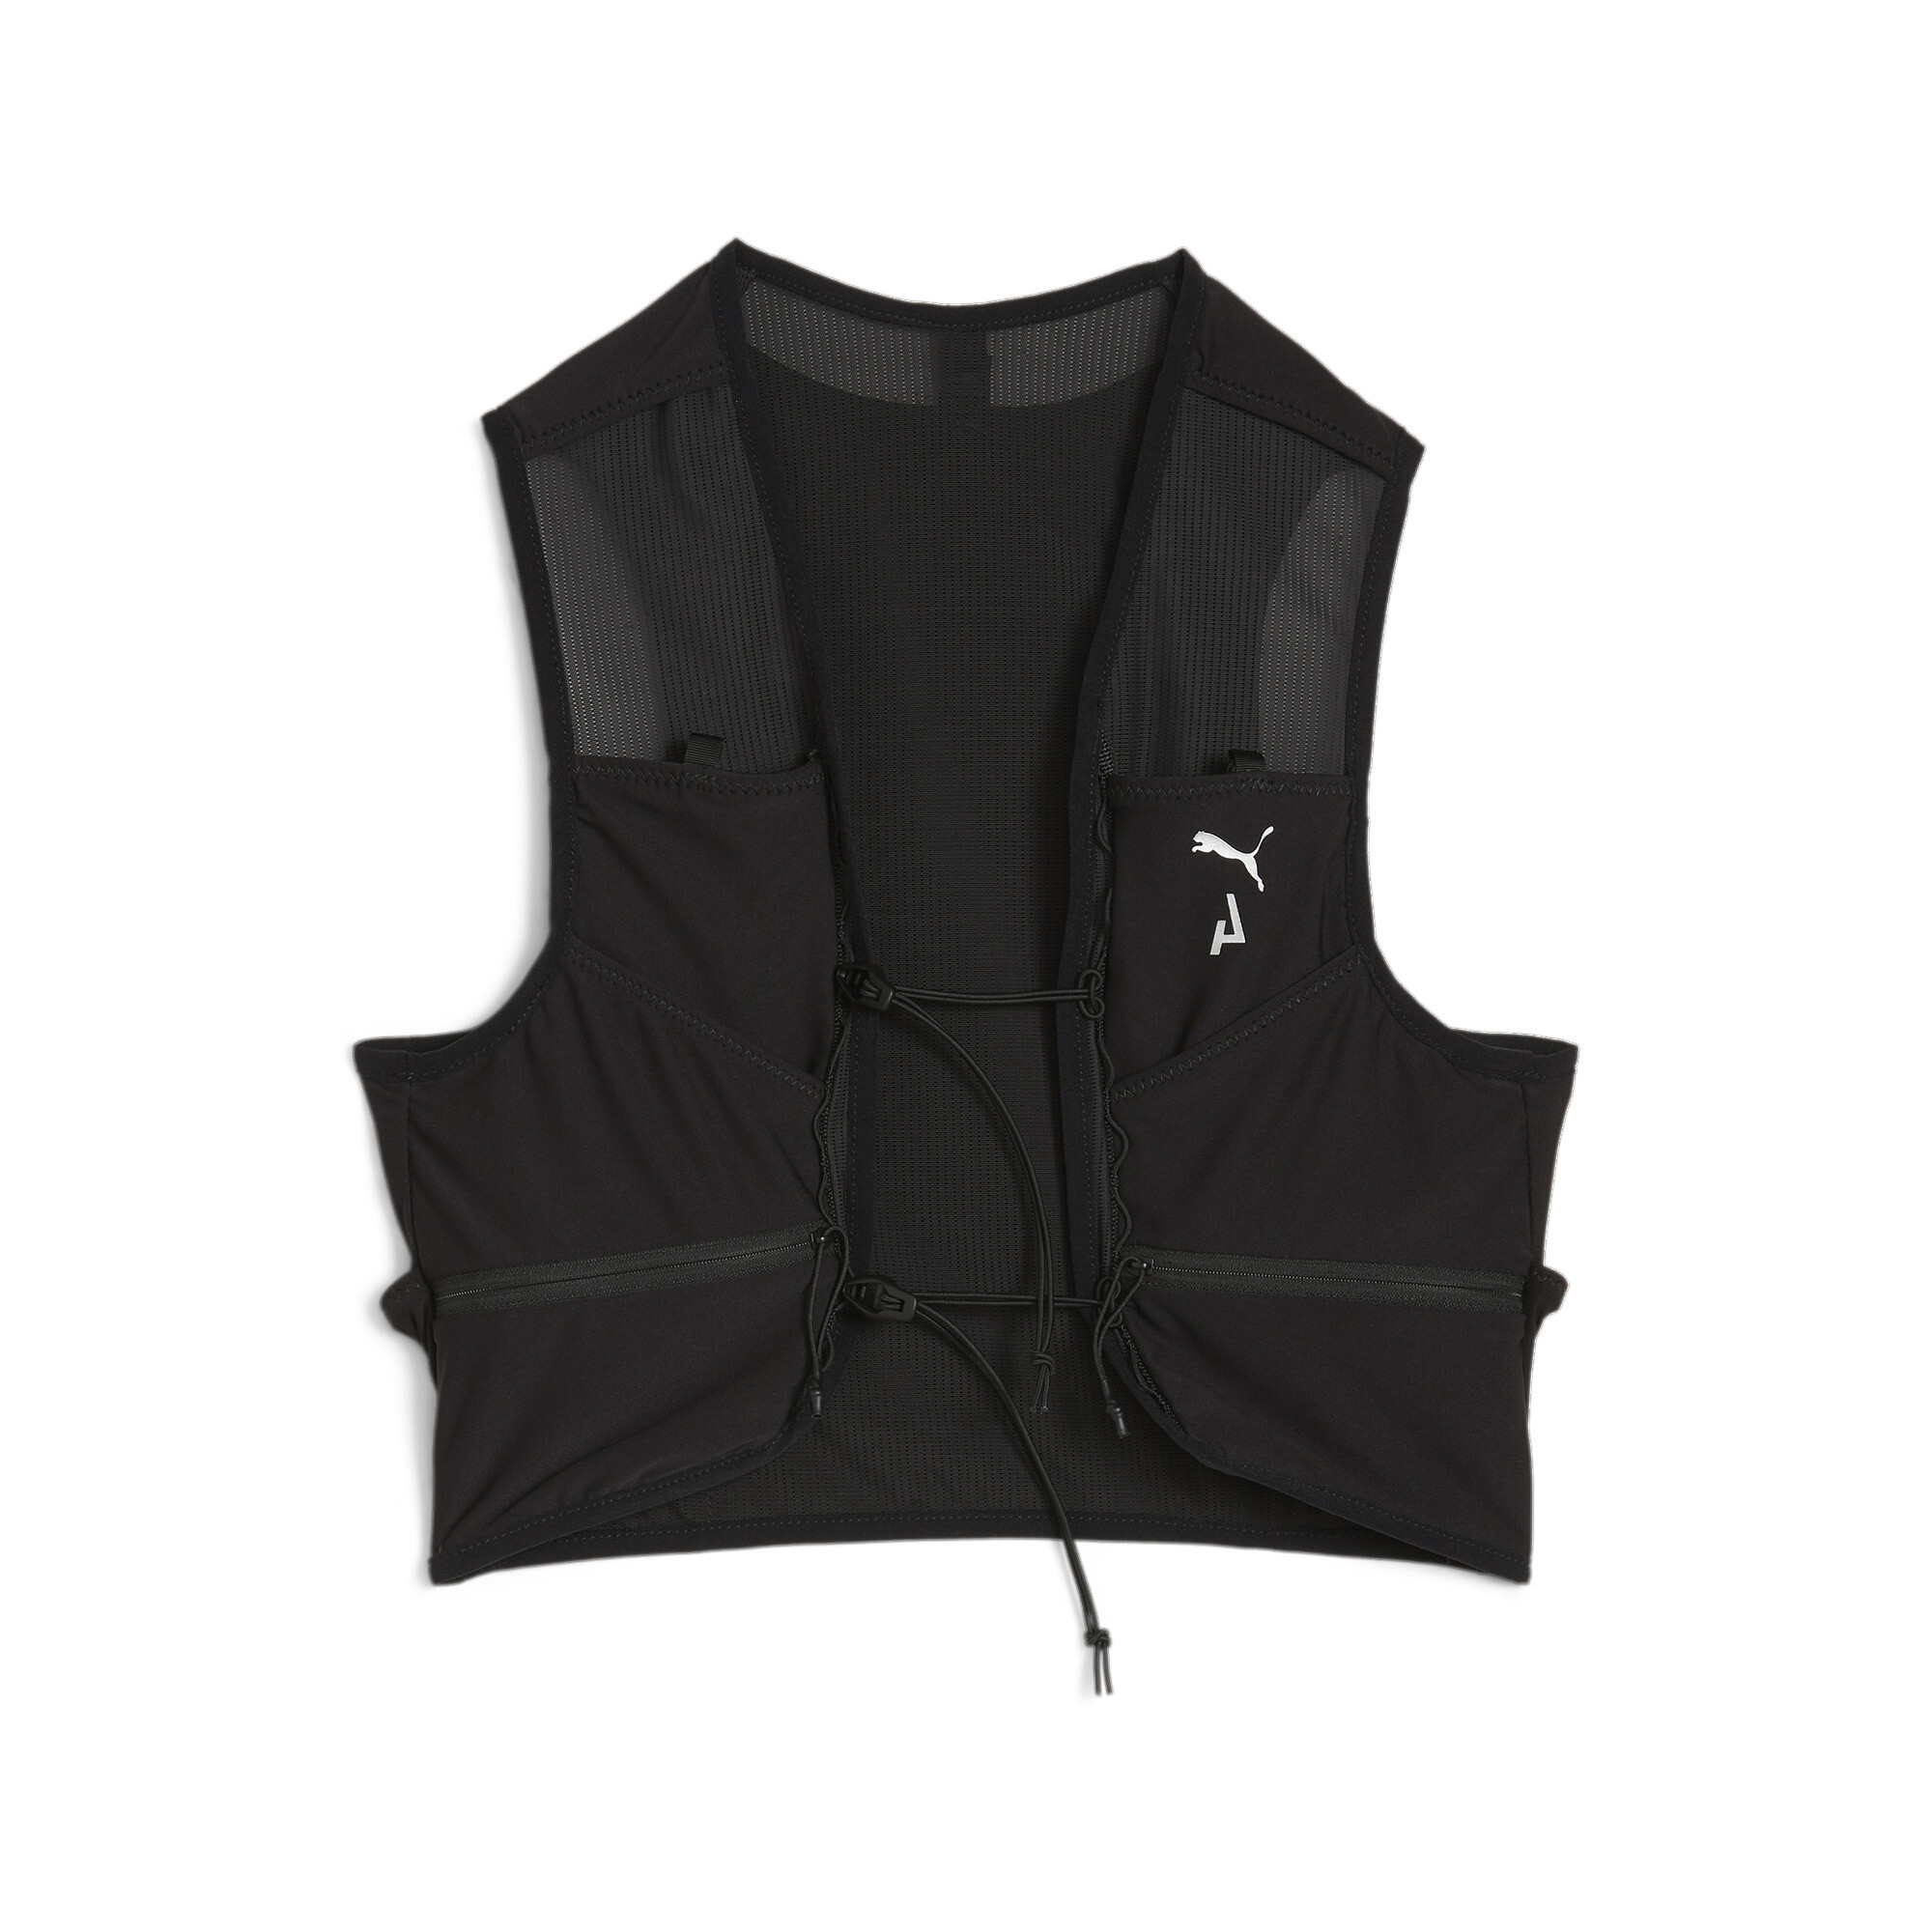 Puma SEASONS Trail Running Vest, Black, Size L, Accessories